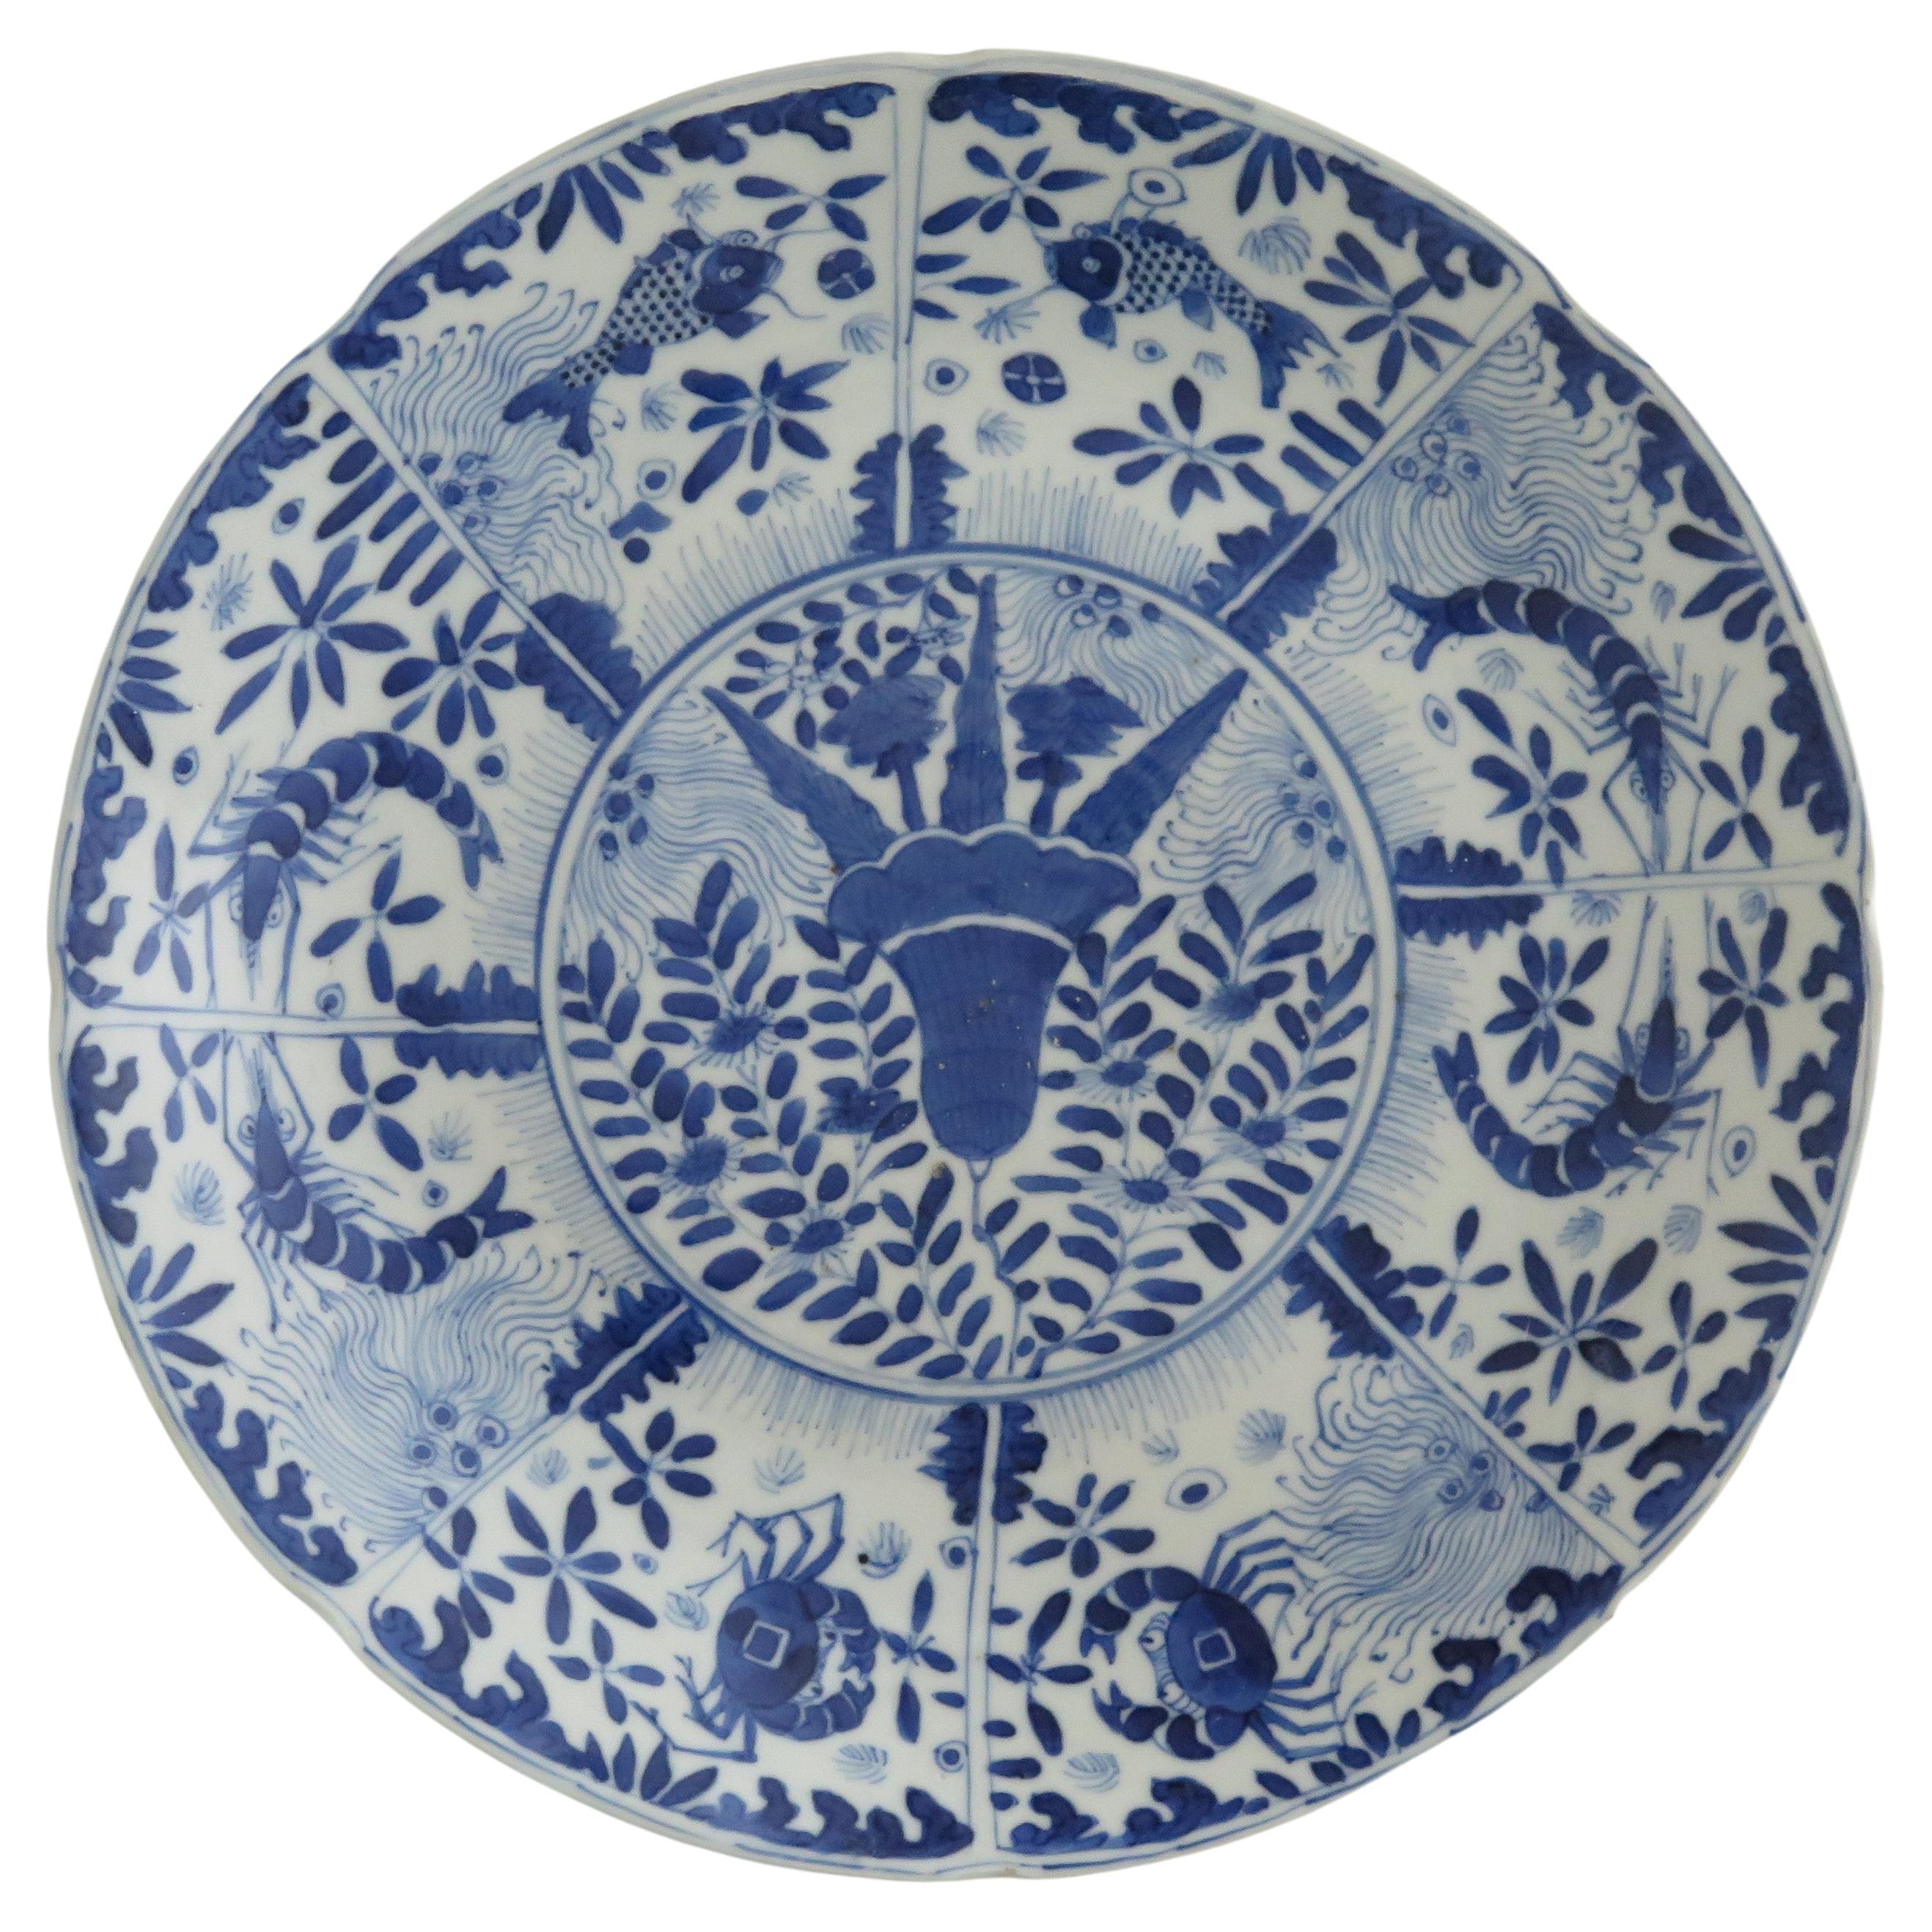 Großer Teller oder Schale aus chinesischem Porzellan mit blauem und weißem Fischmuster, frühes 19. Jahrhundert